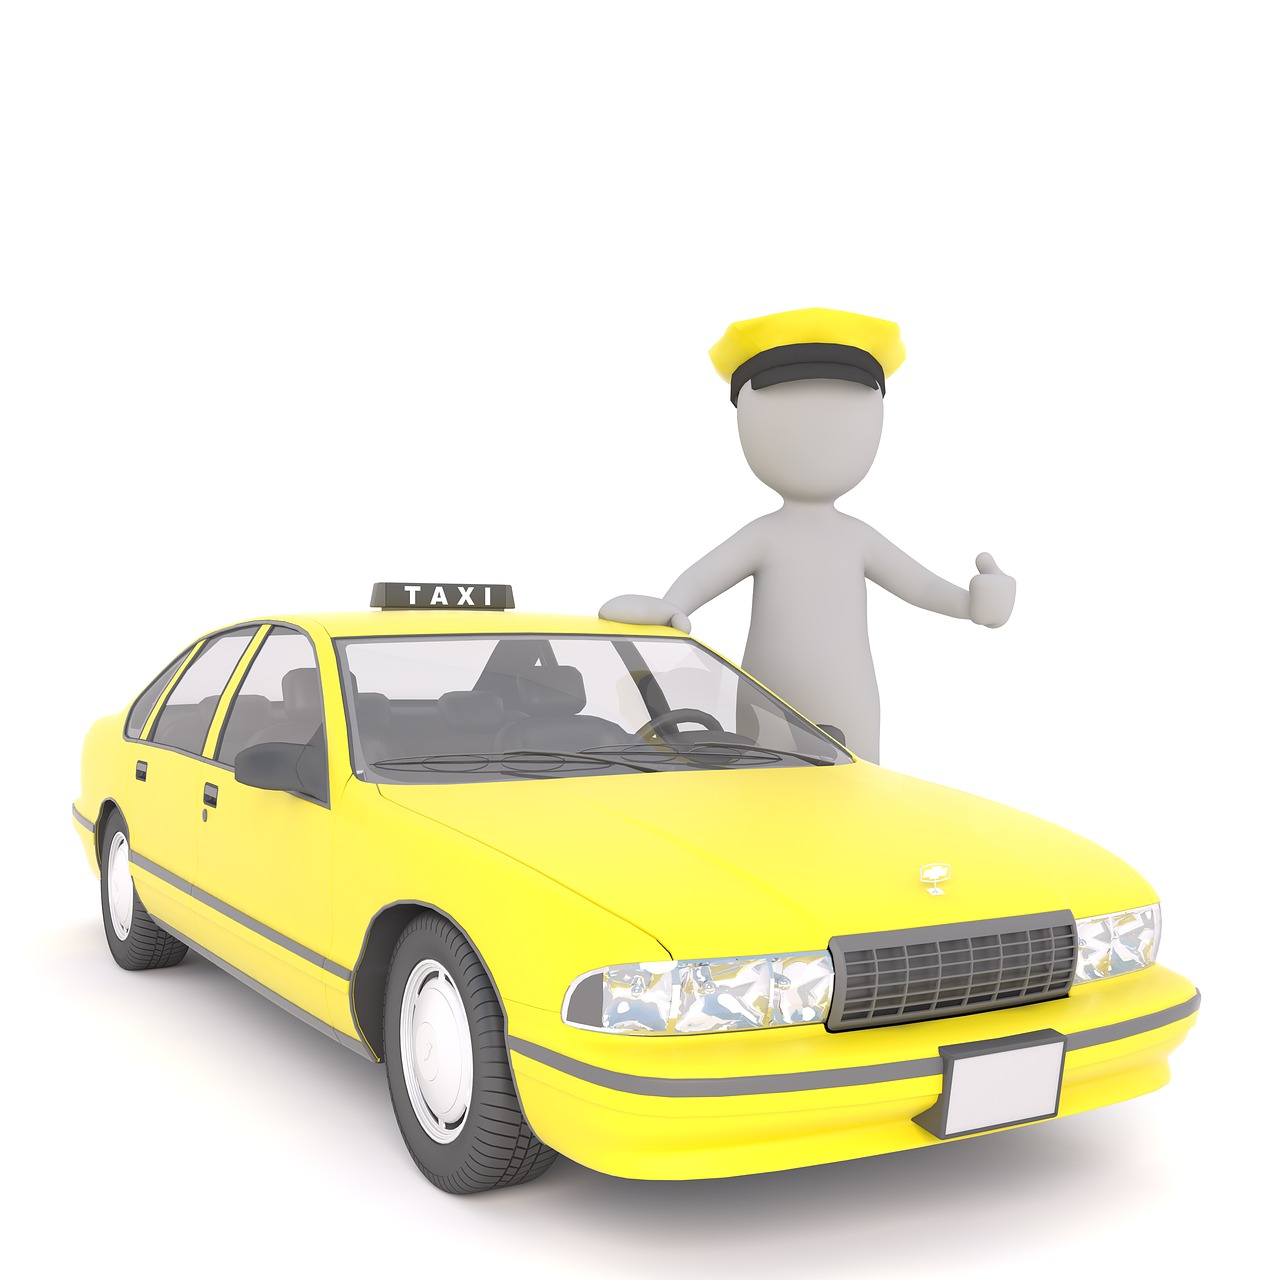 Quanto custa um curso de taxista?